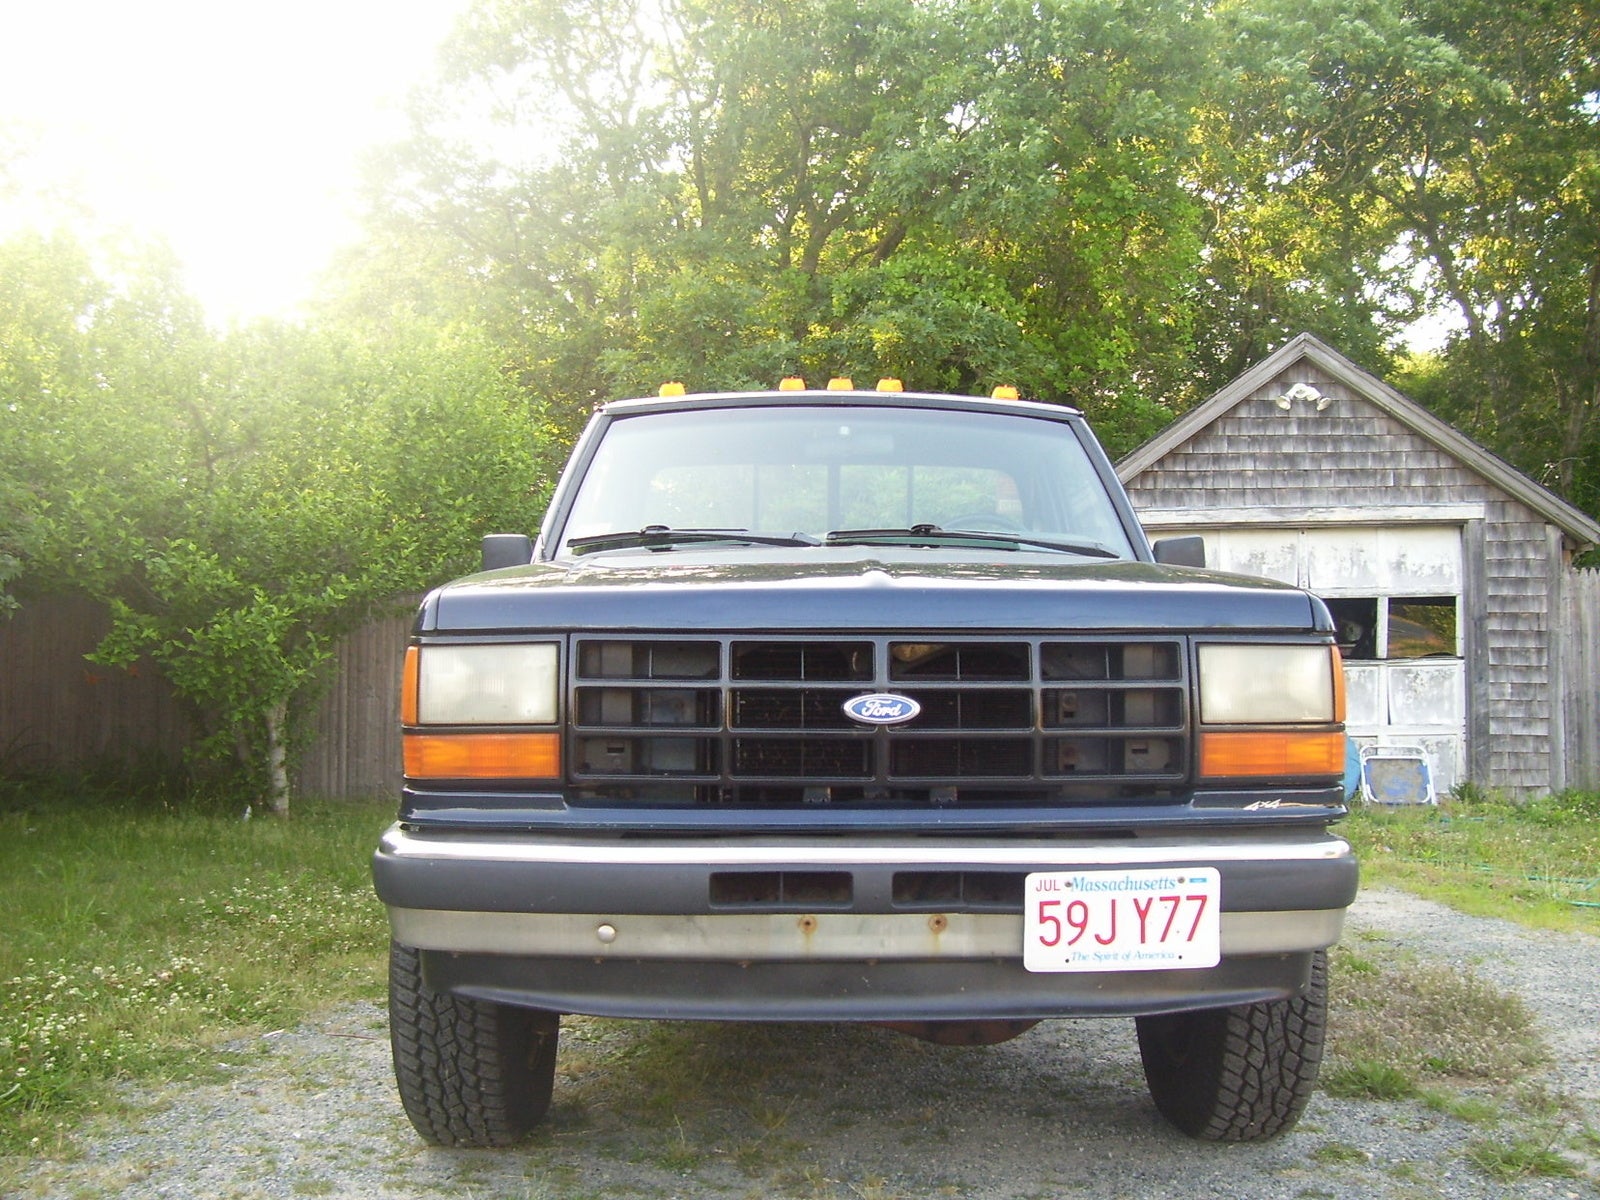 Ford Ranger 1990